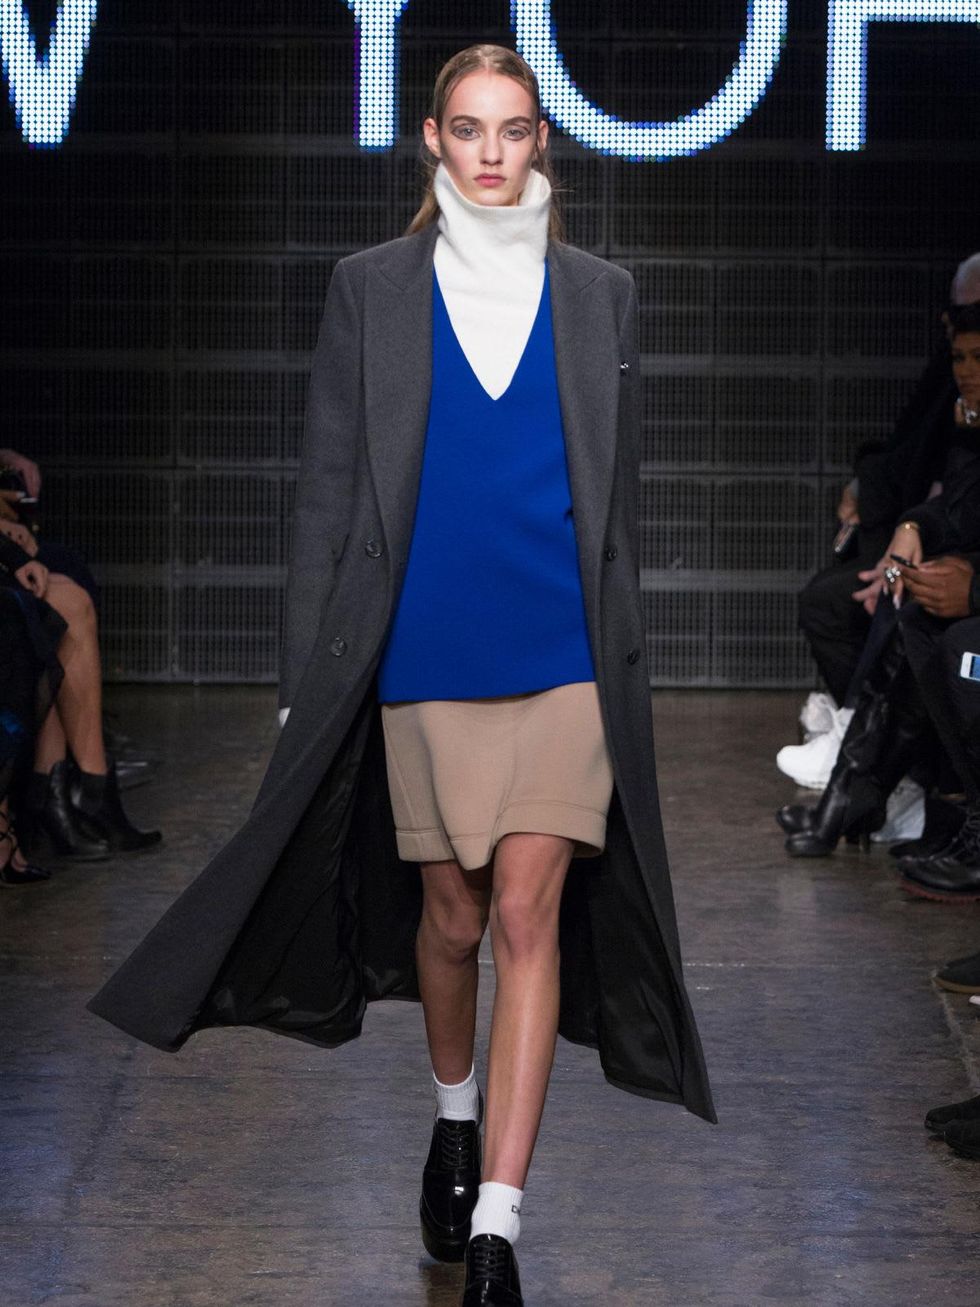 01 Clifford Fashion Week New York Fall 2015 DKNY February 2015